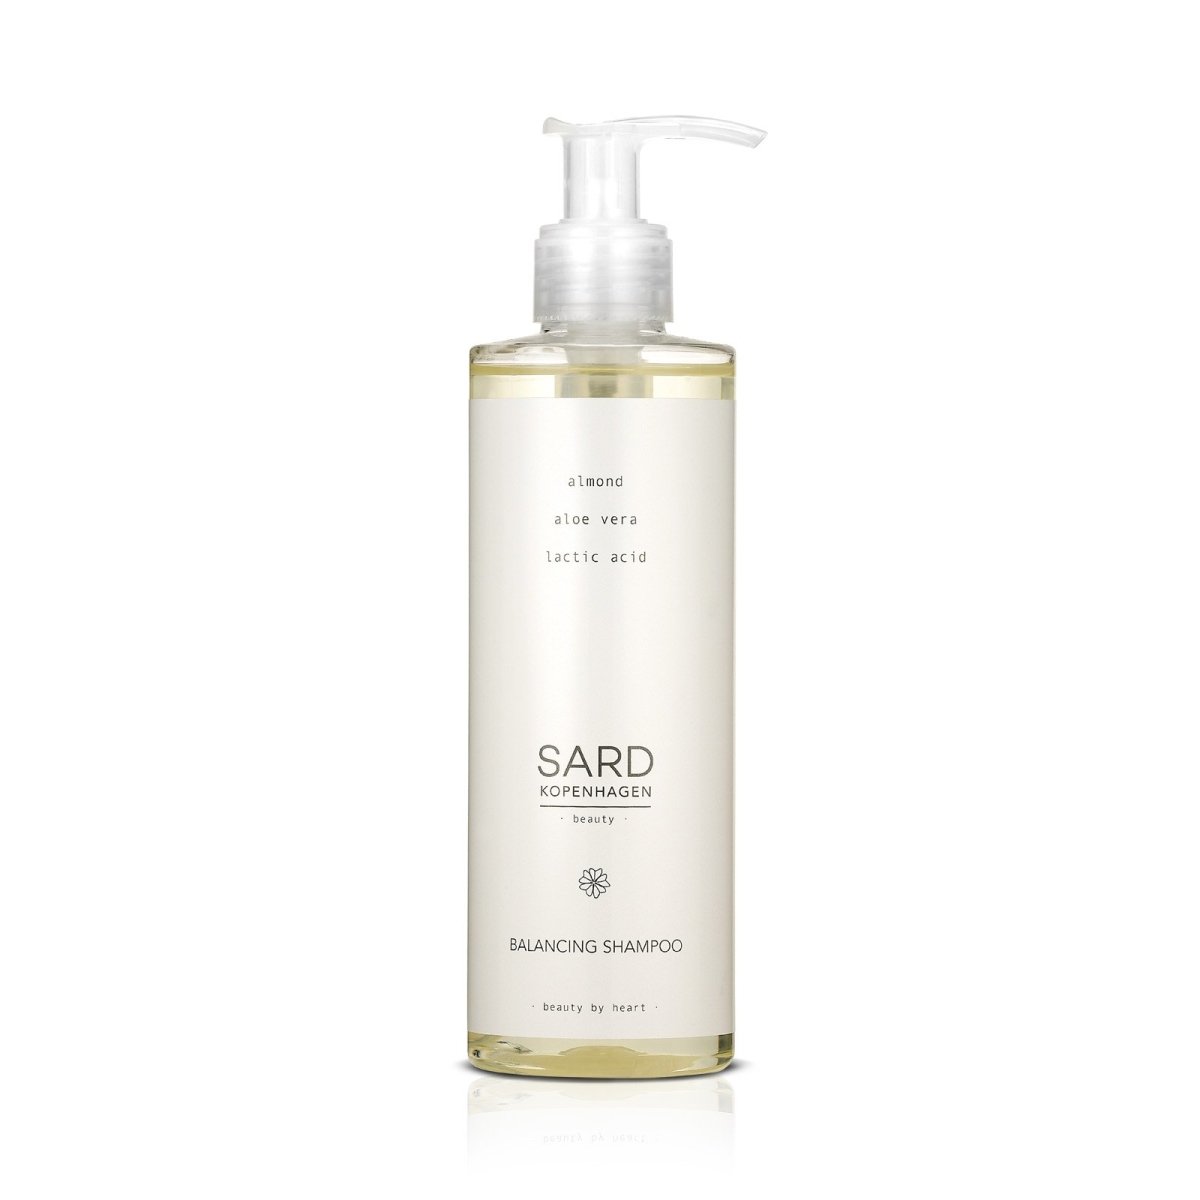 SARDkopenhagen, Balancing Shampoo 250 ML#SARDkopenhagenHaircareBuump